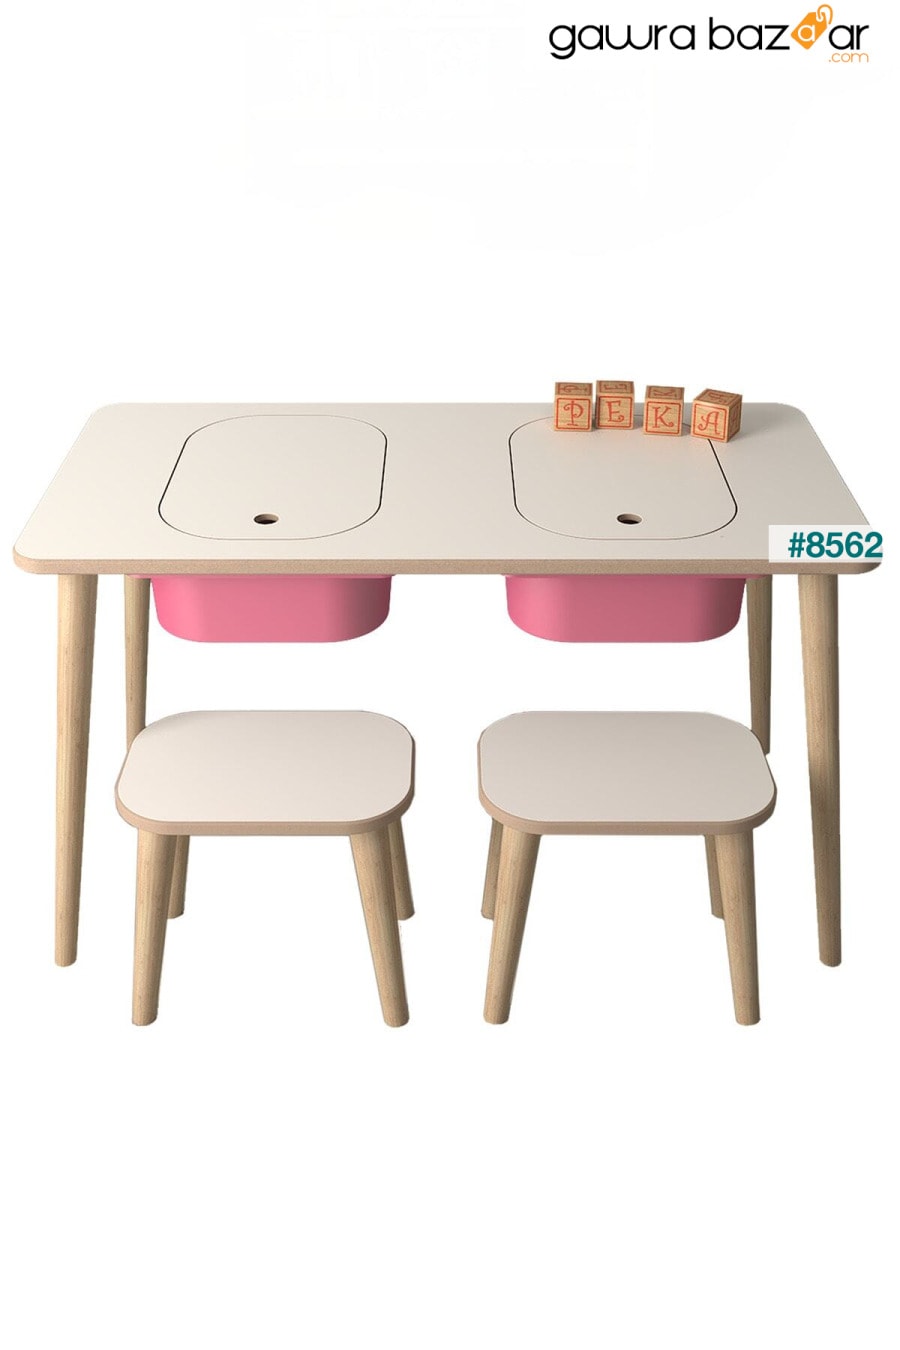 طاولة لعب وأنشطة للأطفال - 2 مقعد - مع سلة وردية PEKA 3